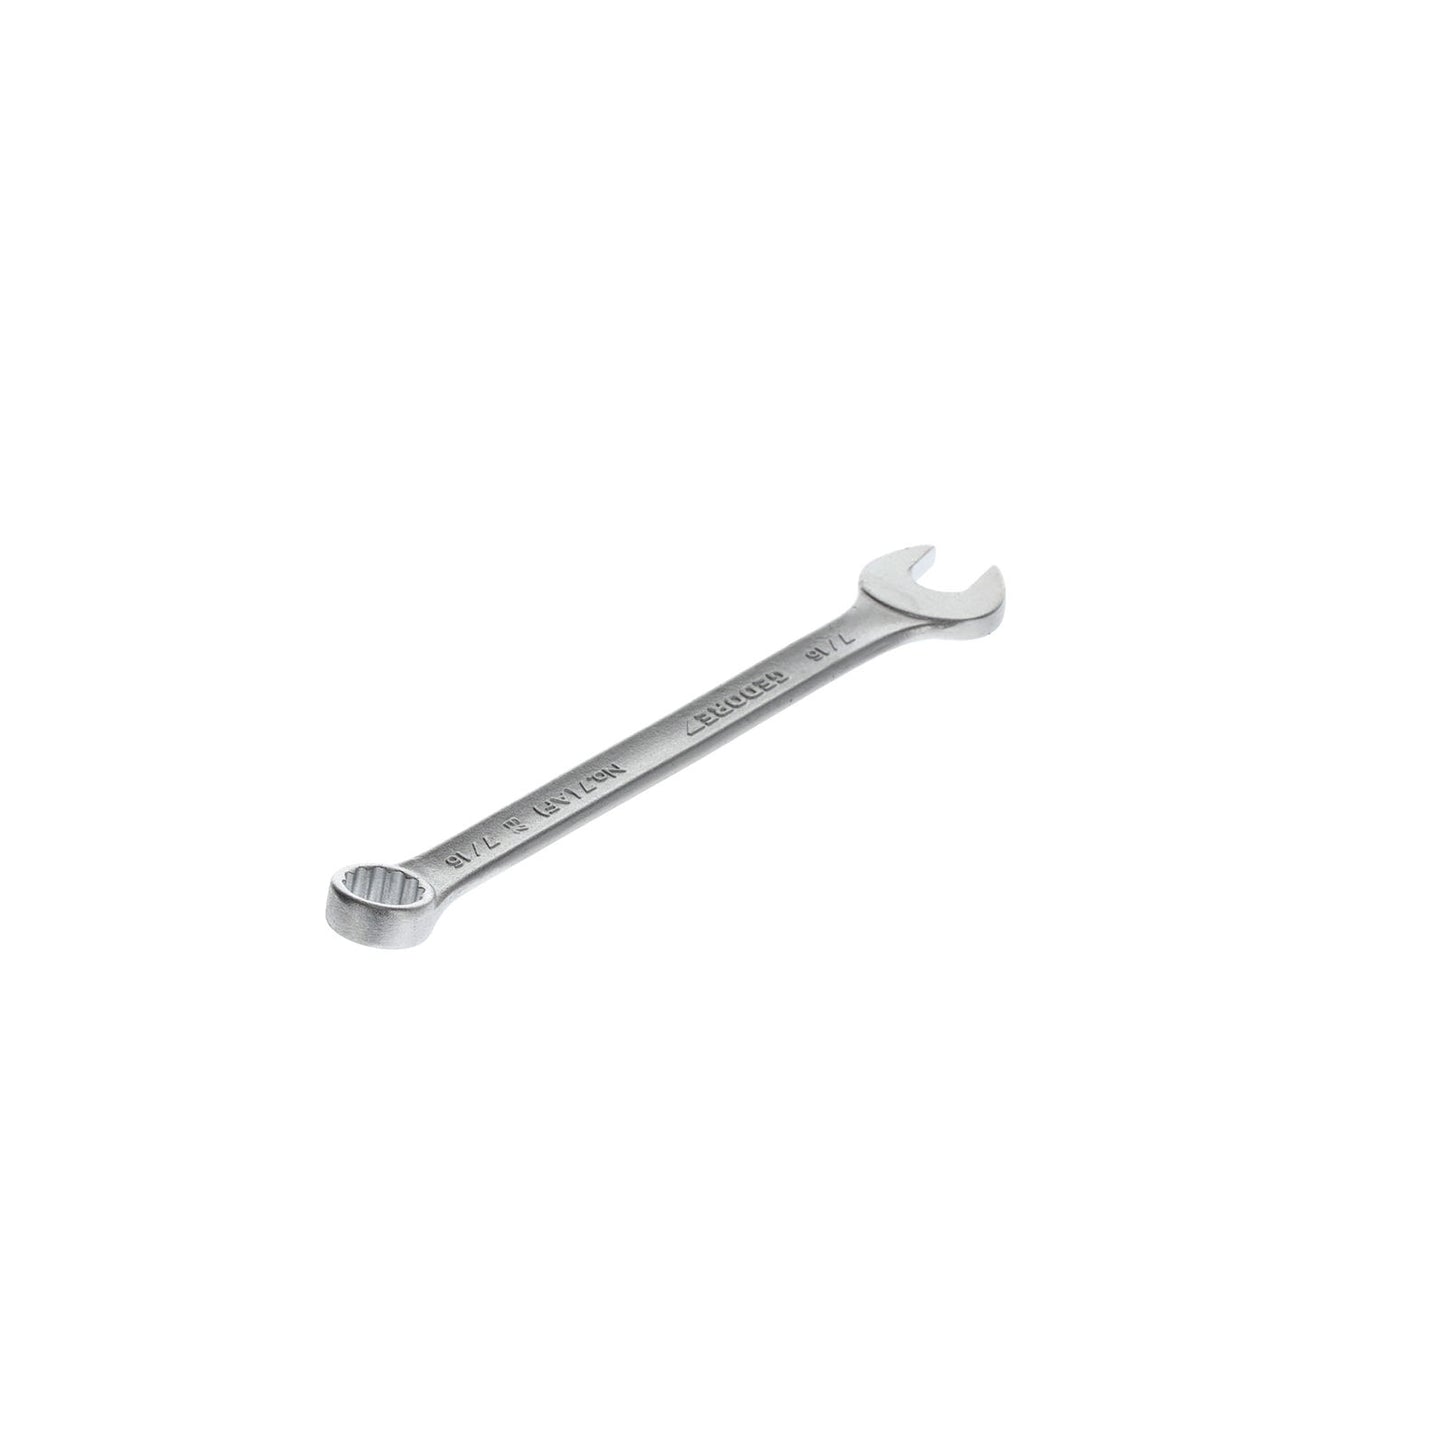 GEDORE 7 7/16AF - Combination Wrench, 7/16AF (6099270)